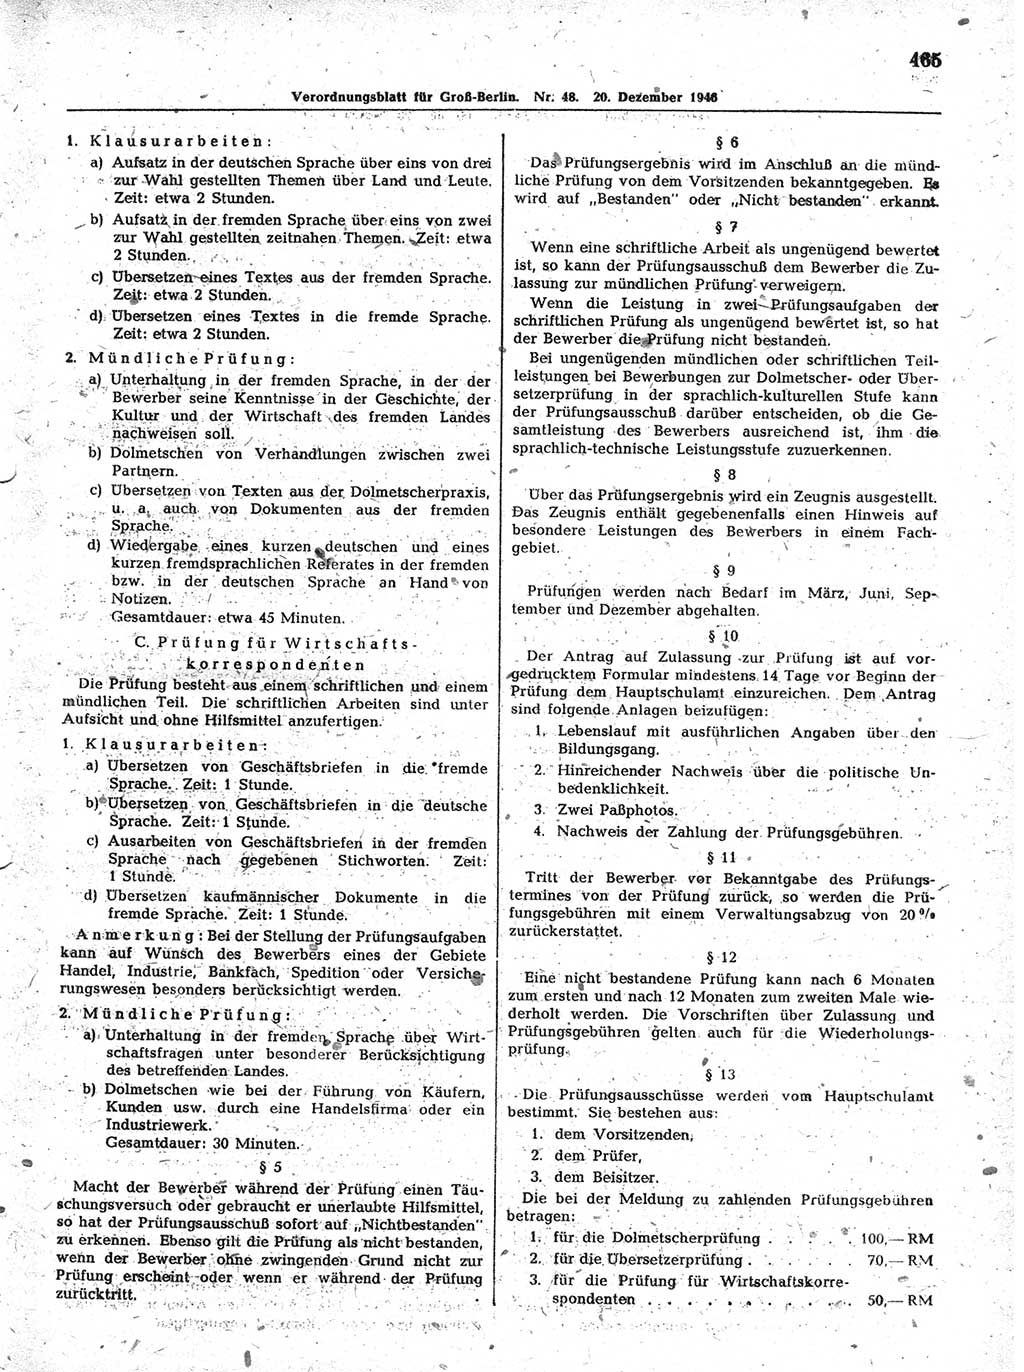 Verordnungsblatt (VOBl.) der Stadt Berlin, für Groß-Berlin 1946, Seite 465 (VOBl. Bln. 1946, S. 465)